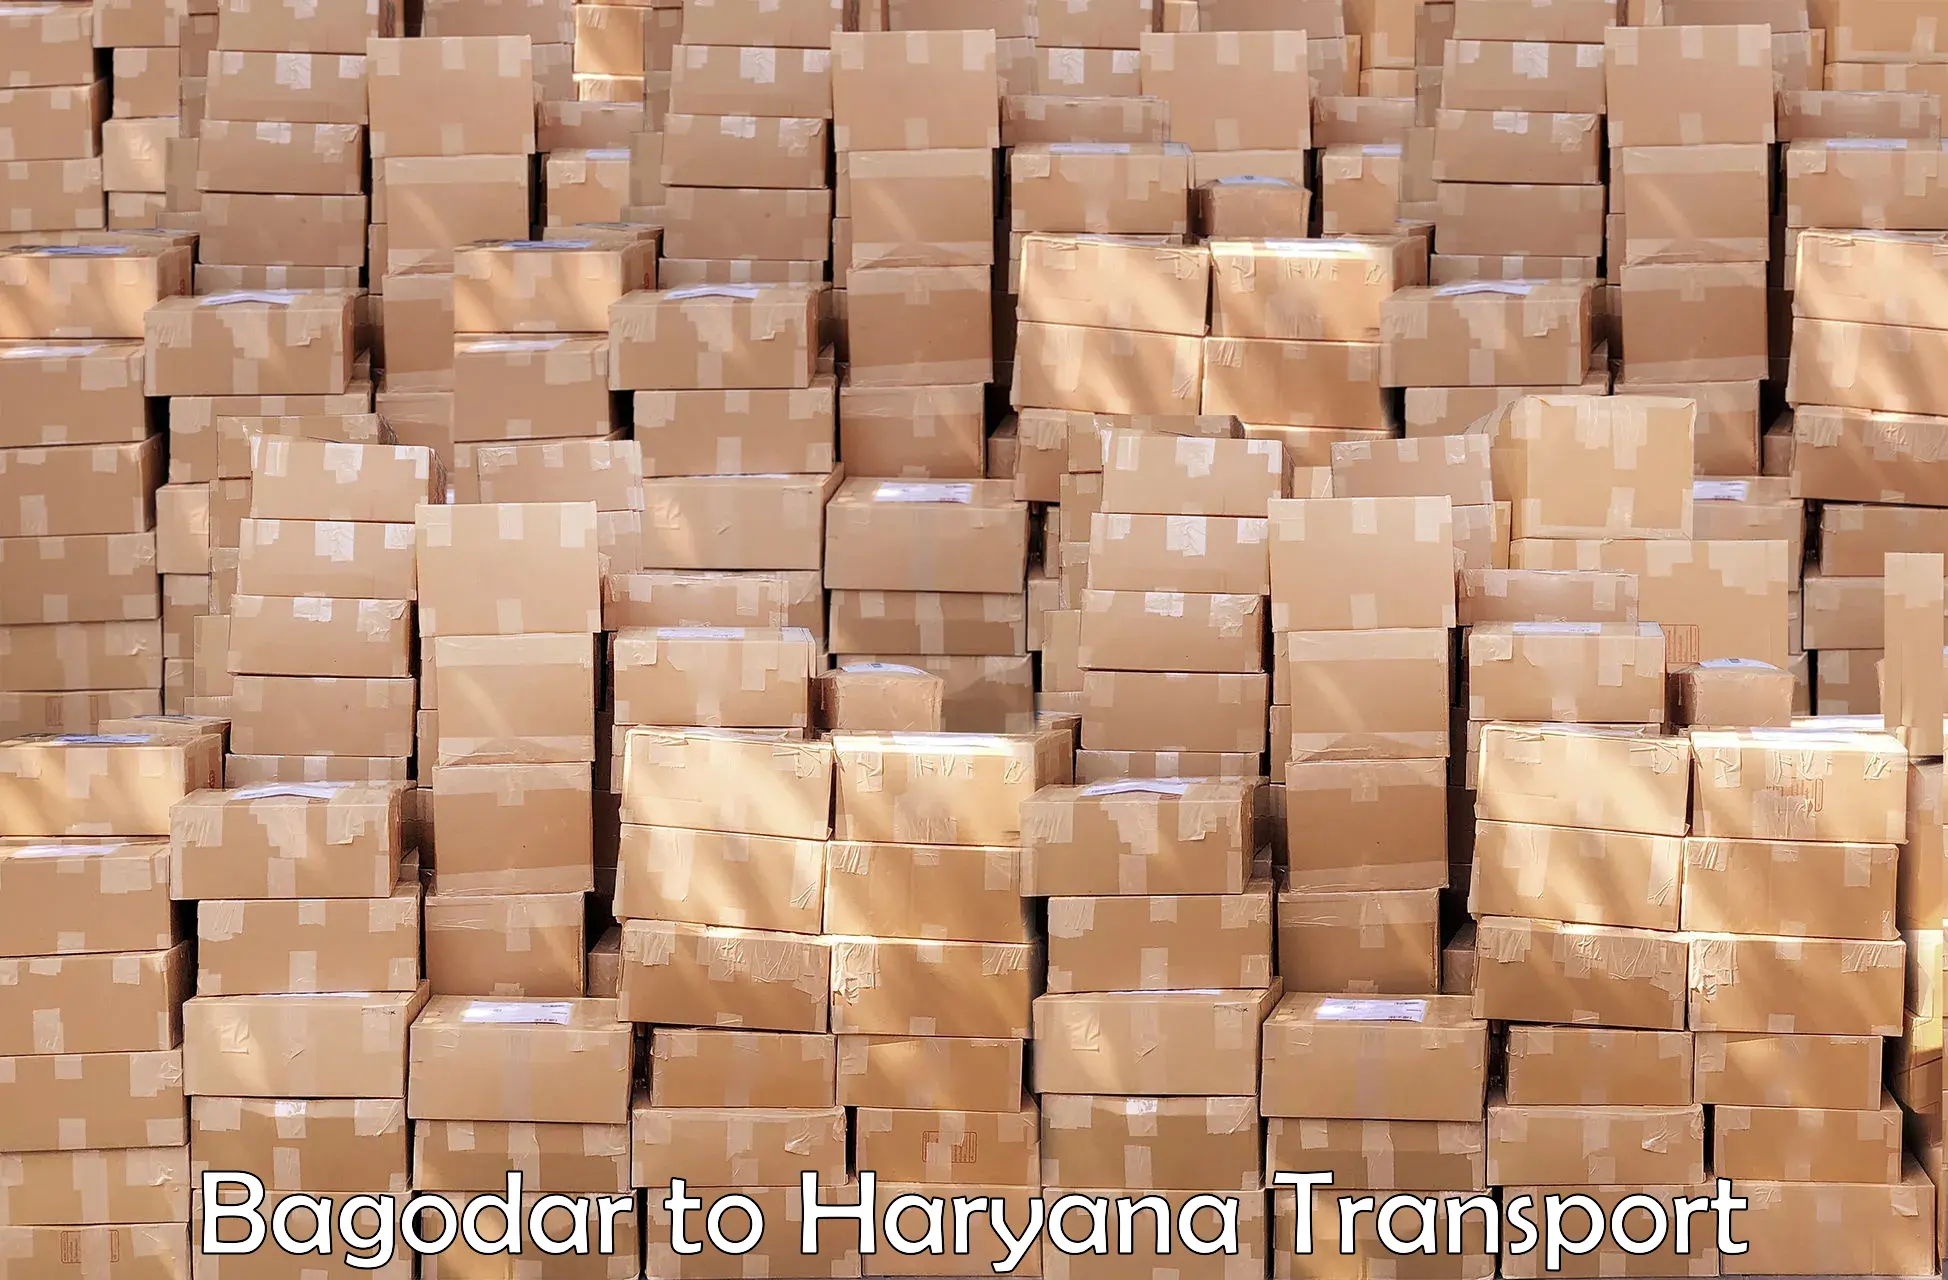 Goods delivery service Bagodar to Hansi